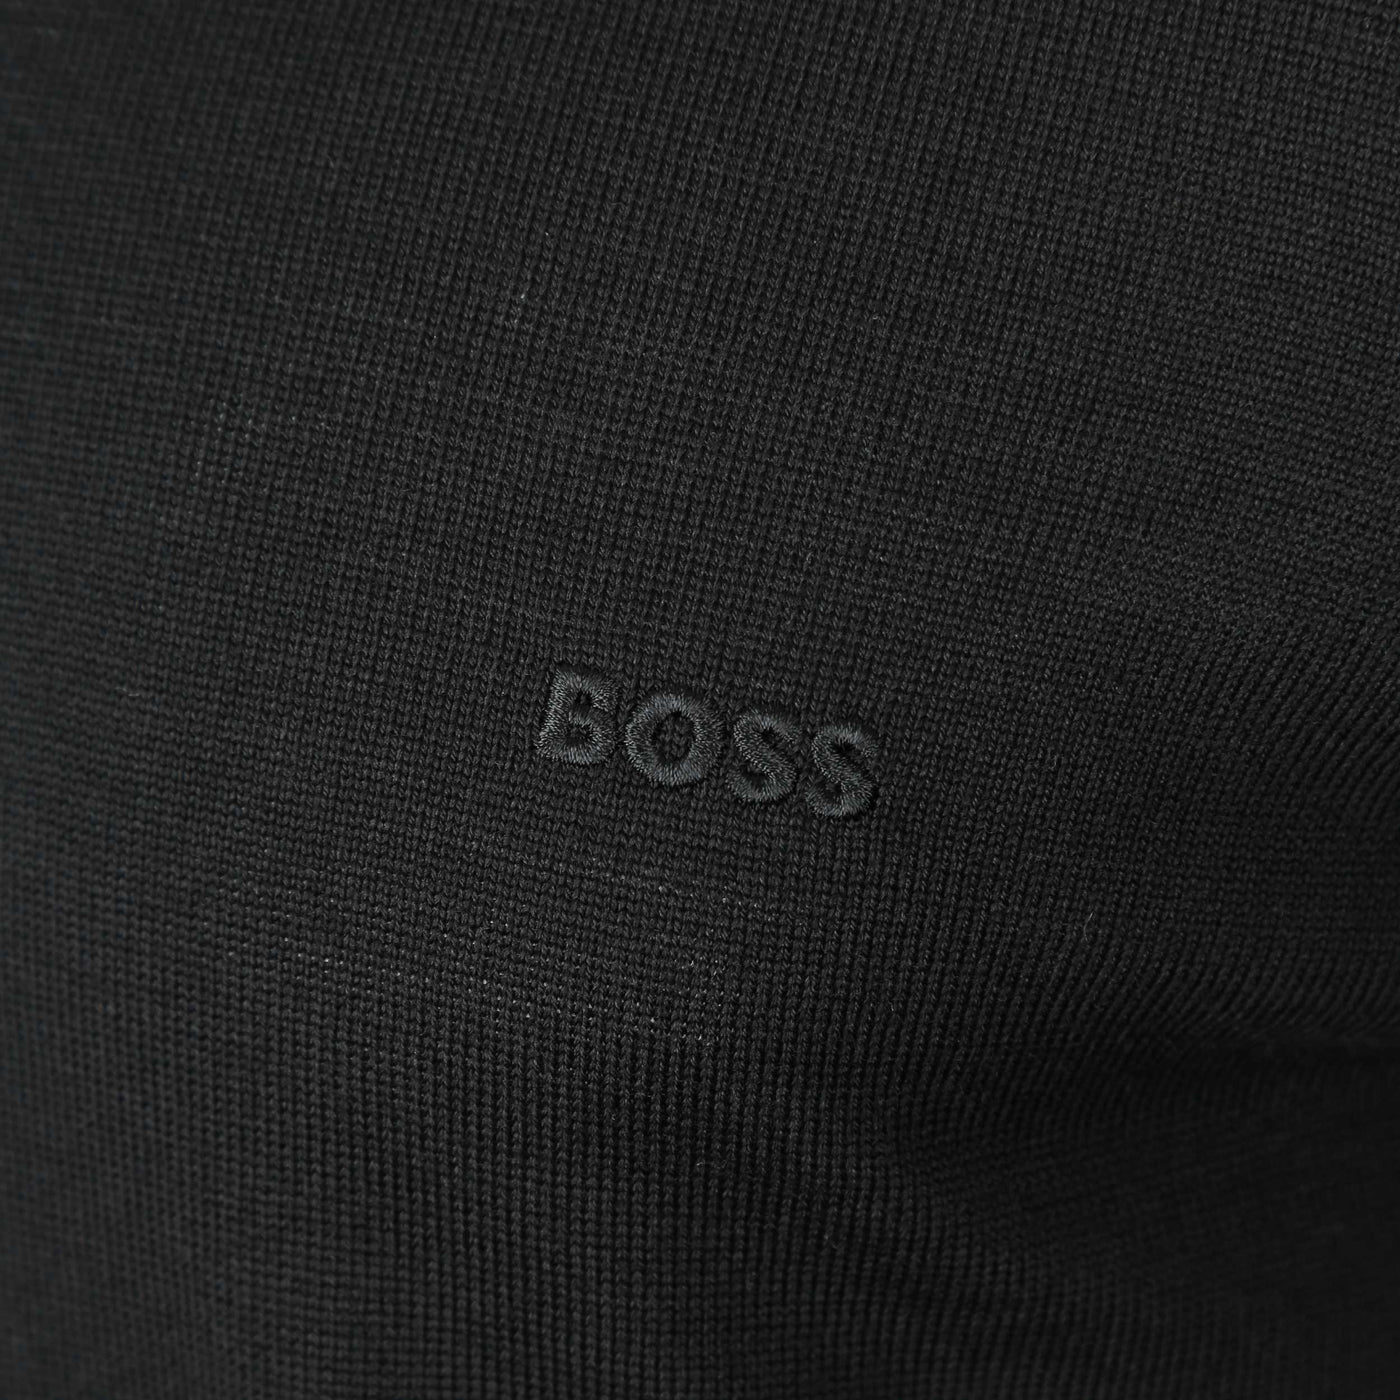 BOSS Bono L Knitwear in Black Logo